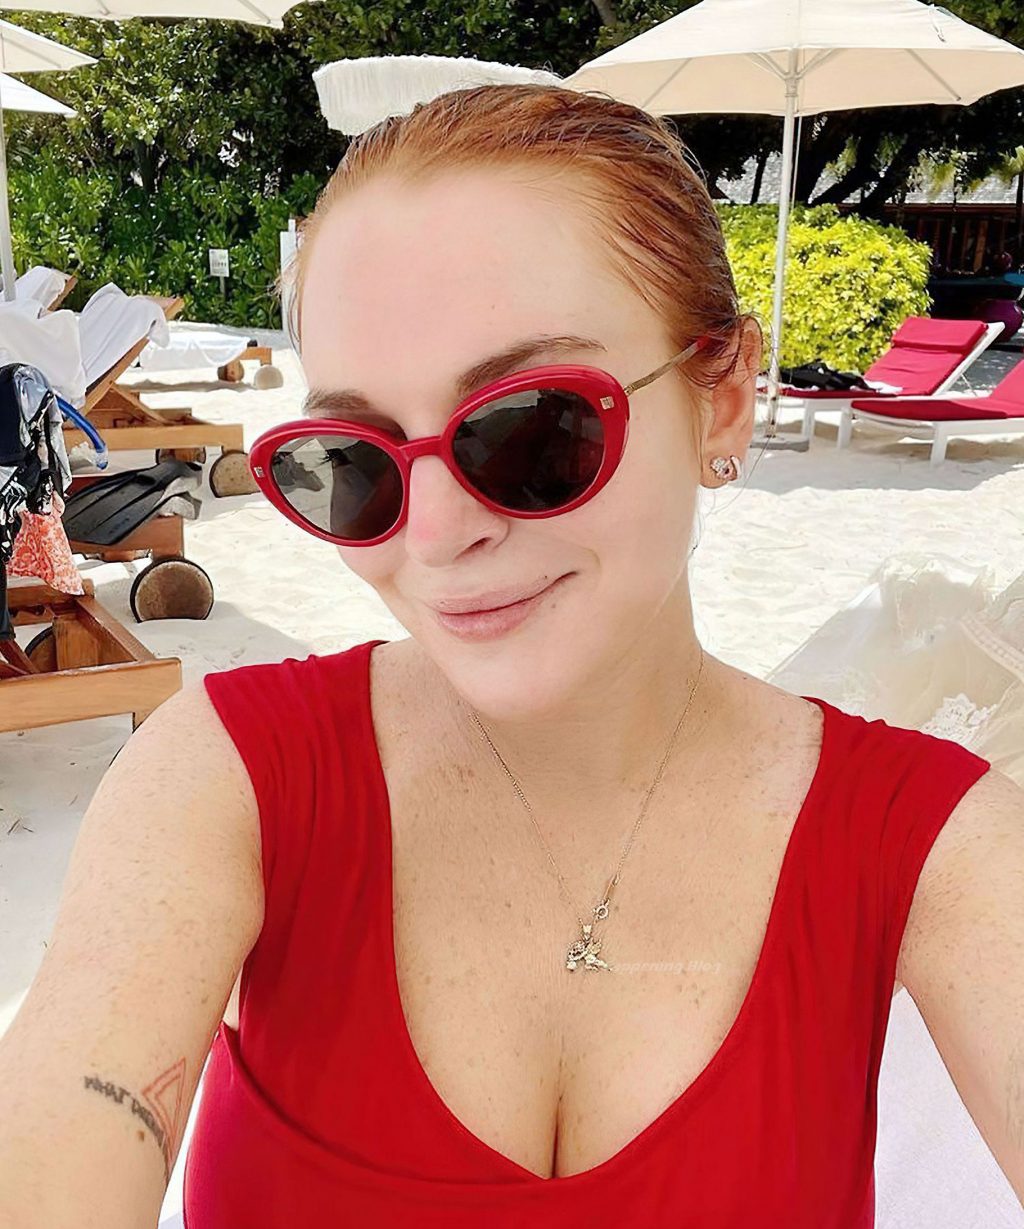 Lindsay Lohan nude sextape bikini feet ass tits pussy redhead new bikini ScandalPost 4 1024x1229 optimized